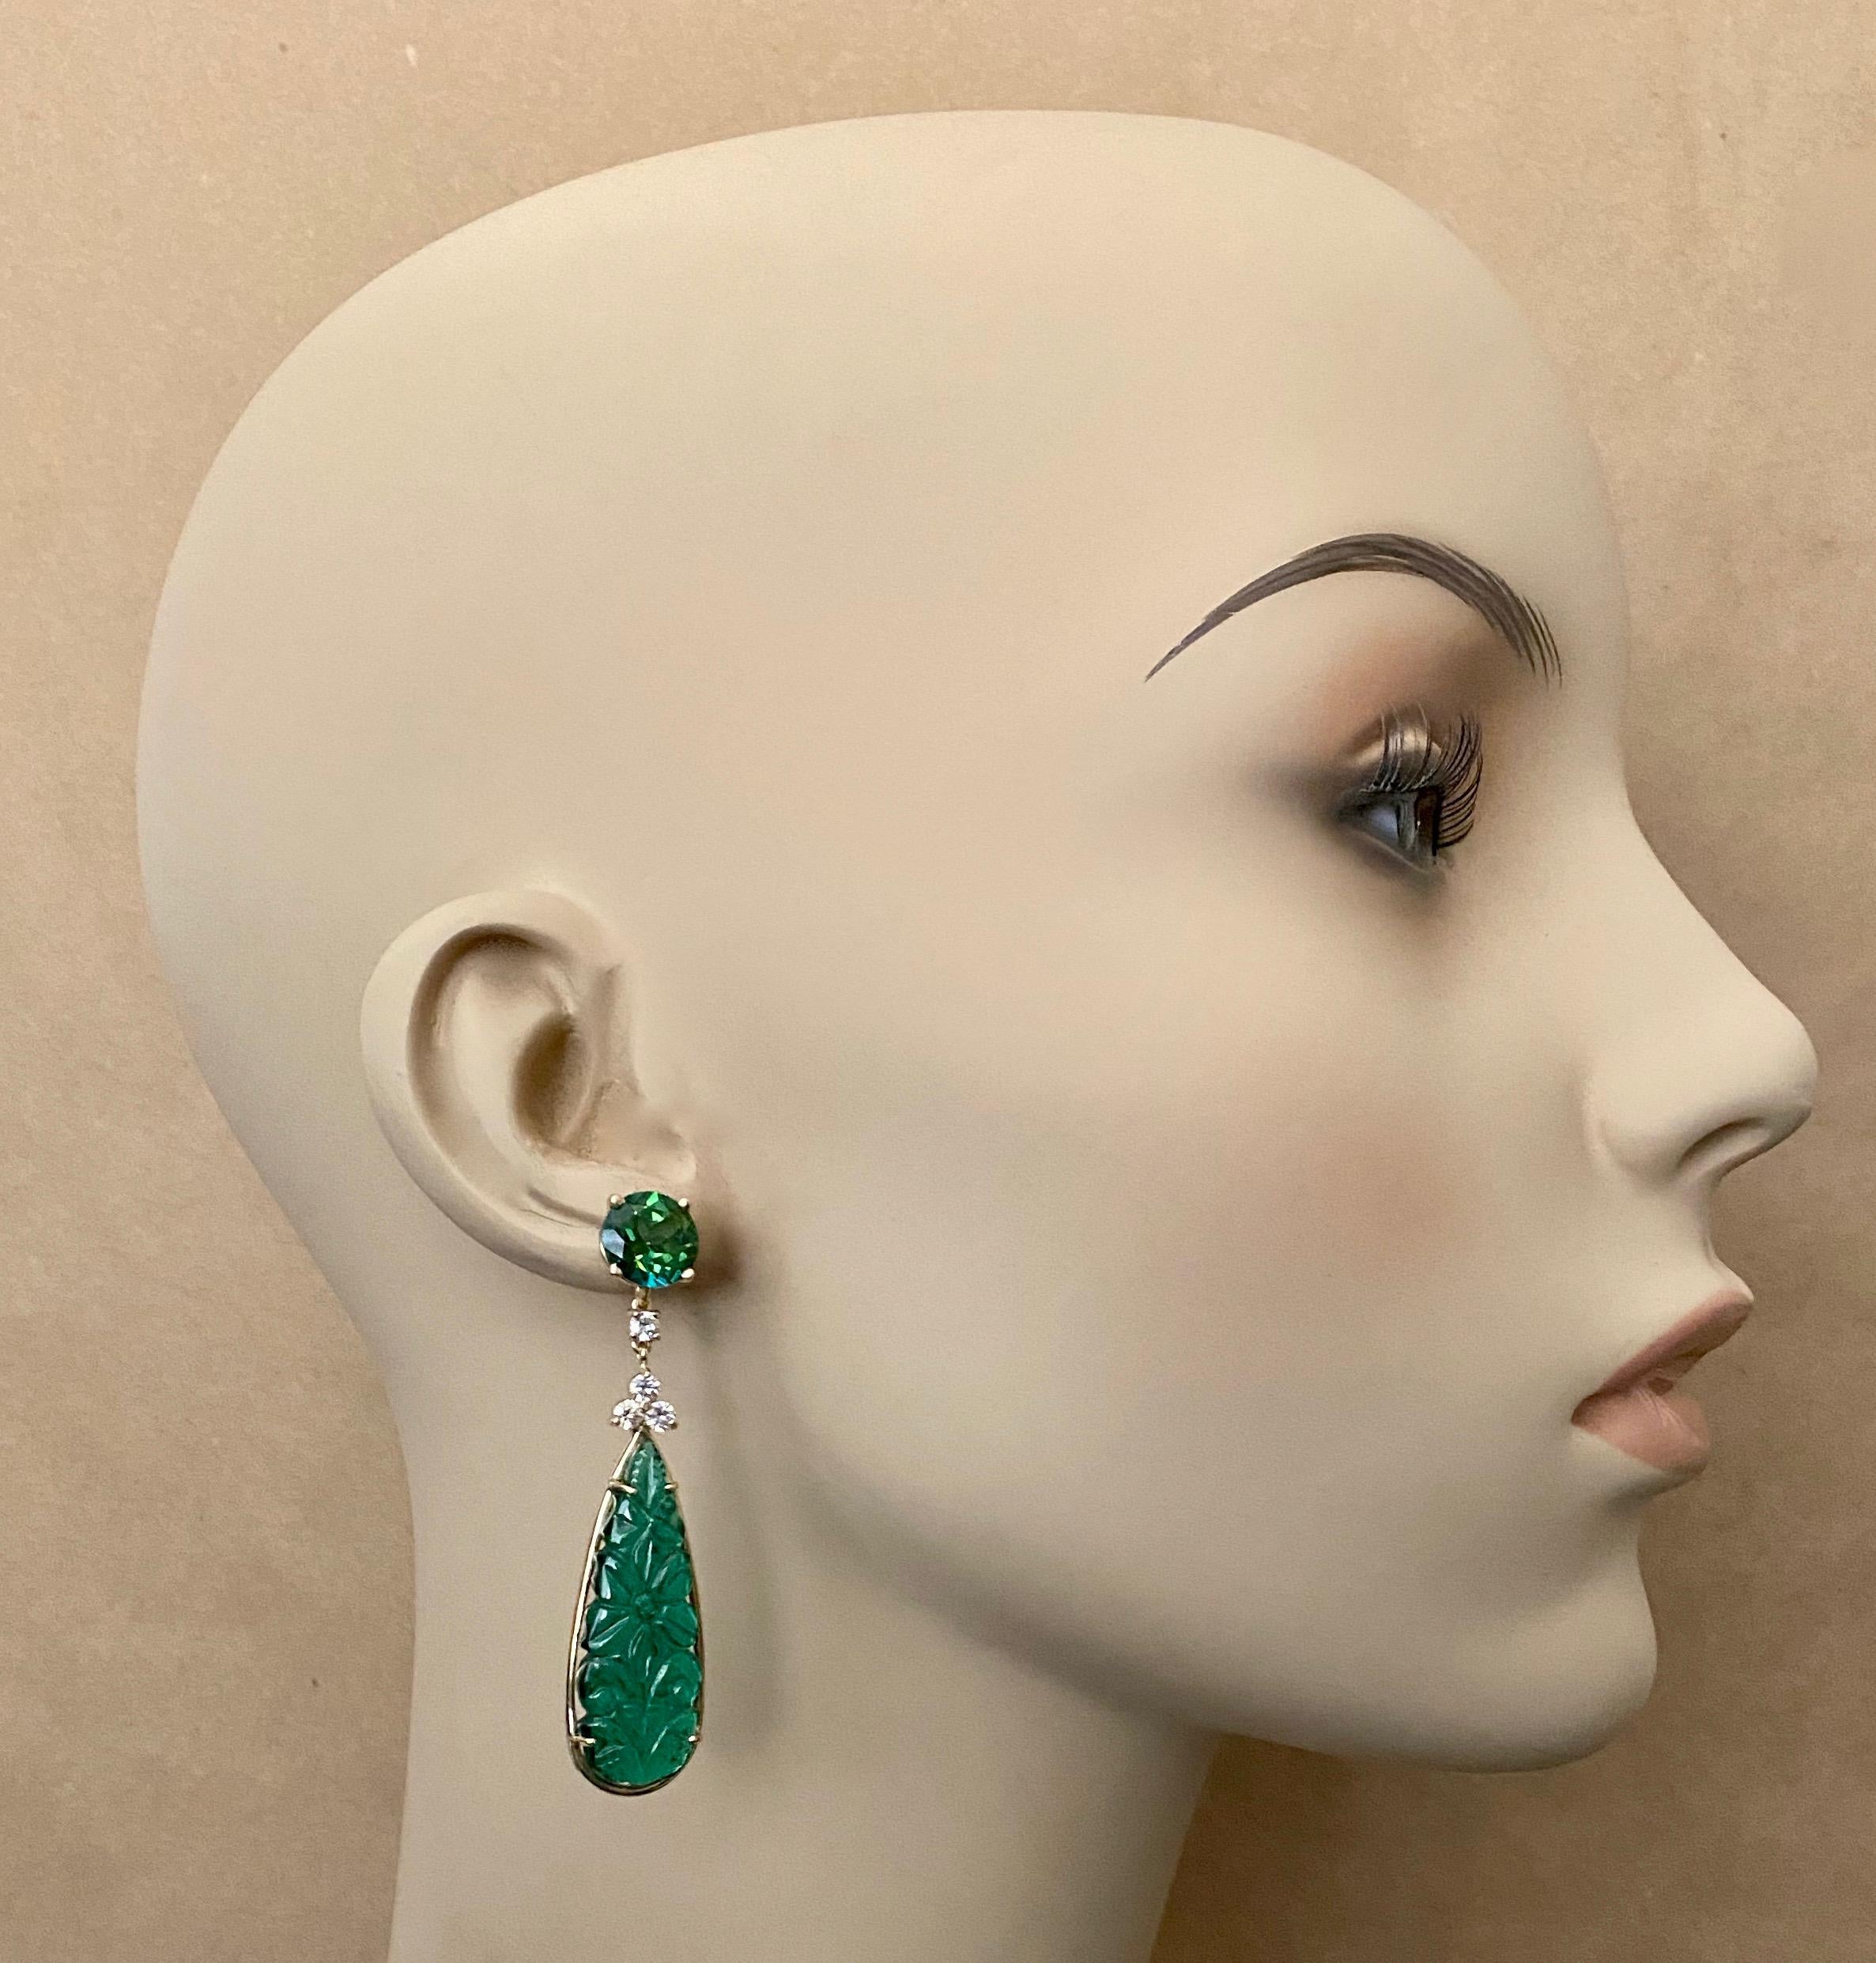 Grüne Onyx-Tropfen zieren diese eleganten Ohrringe.  Der Onyx (Herkunft: Peru) ist durchscheinend, leuchtend grün und fein geschnitzt mit einem floralen Muster im indischen Stil.  Die Tropfen werden durch leuchtend grüne, auffällige grüne Topase mit